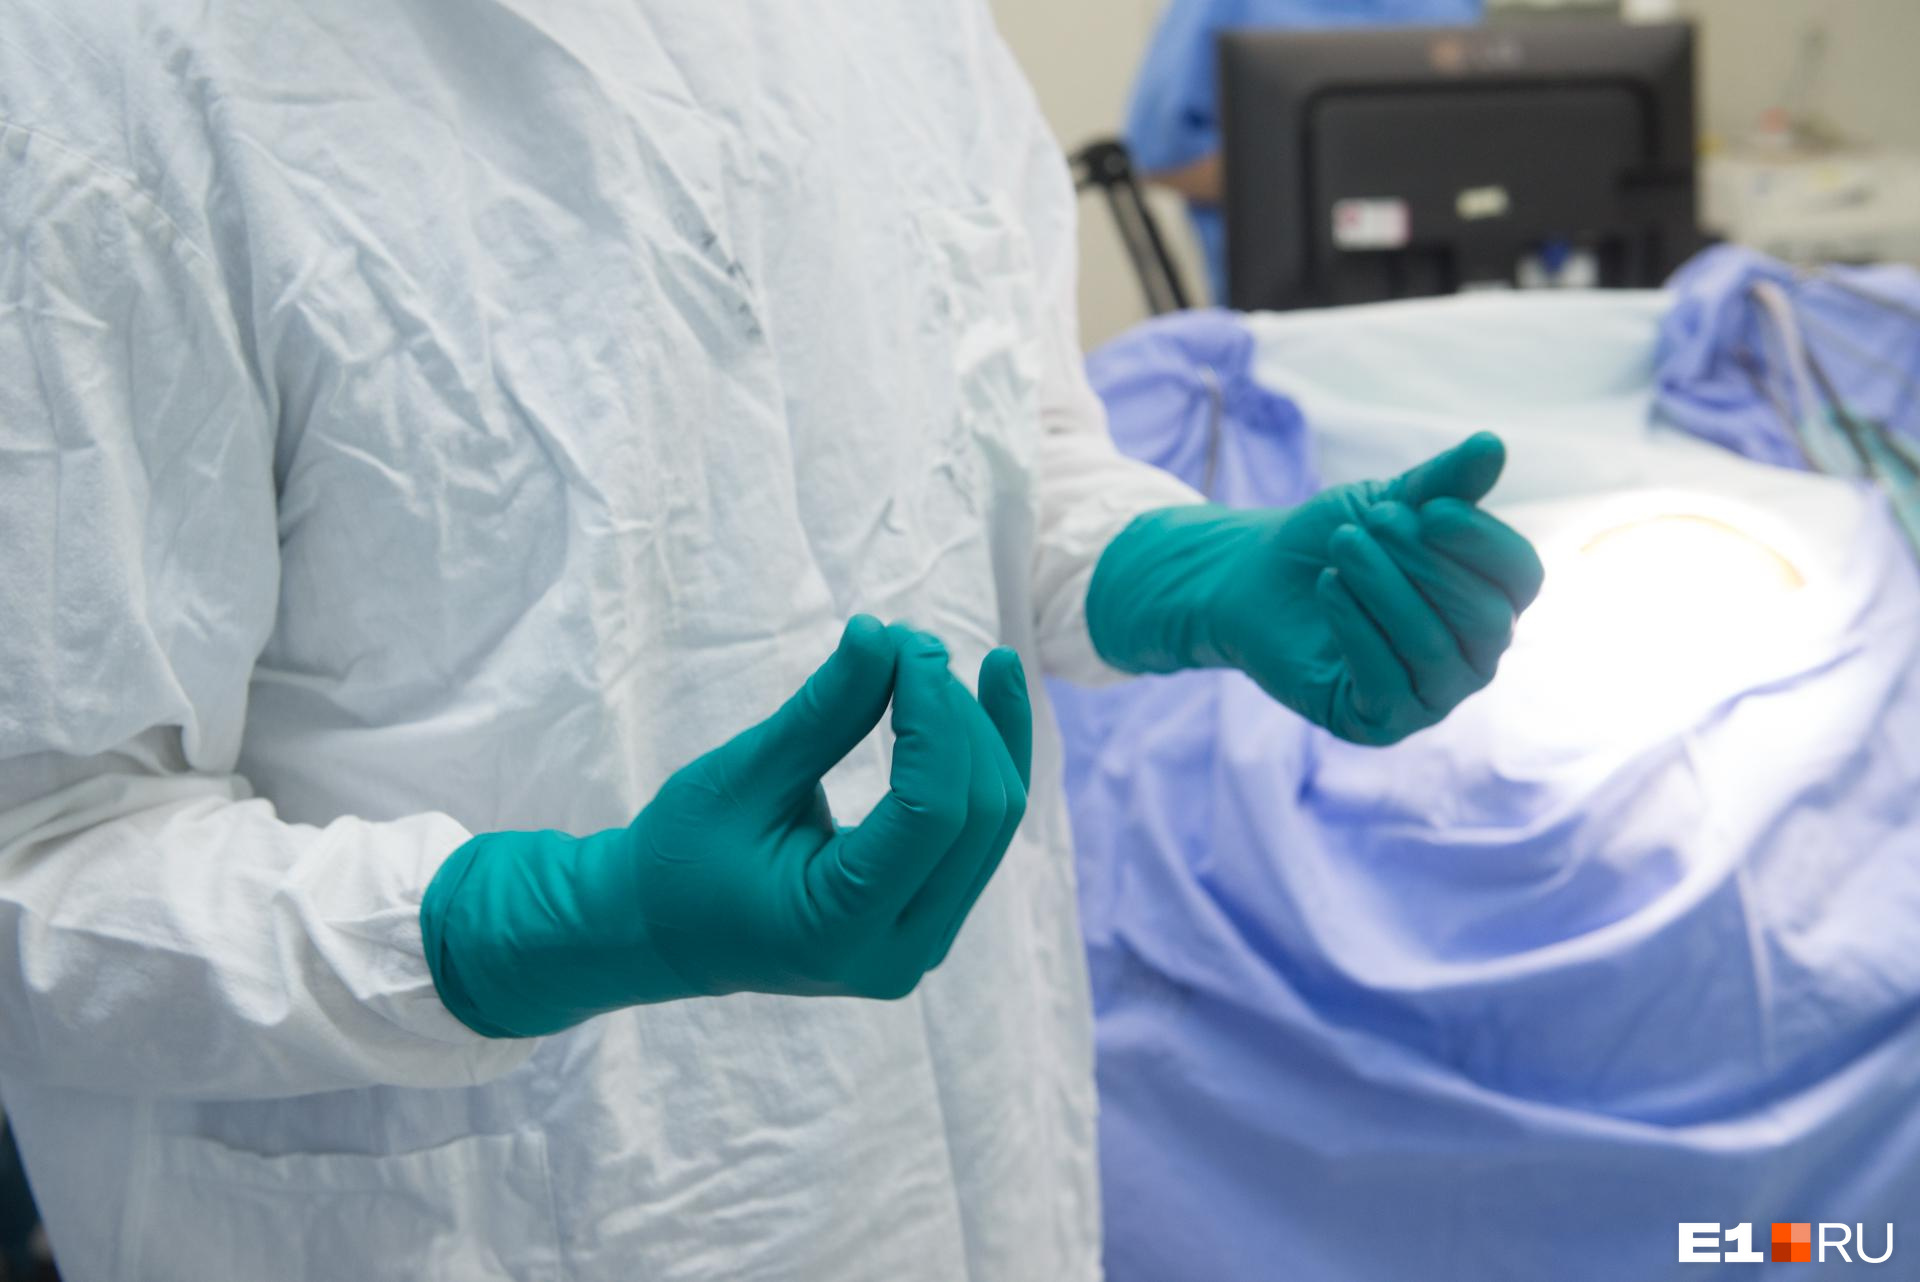 Женщина умерла в частной клинике в Чите от анестезии перед операцией